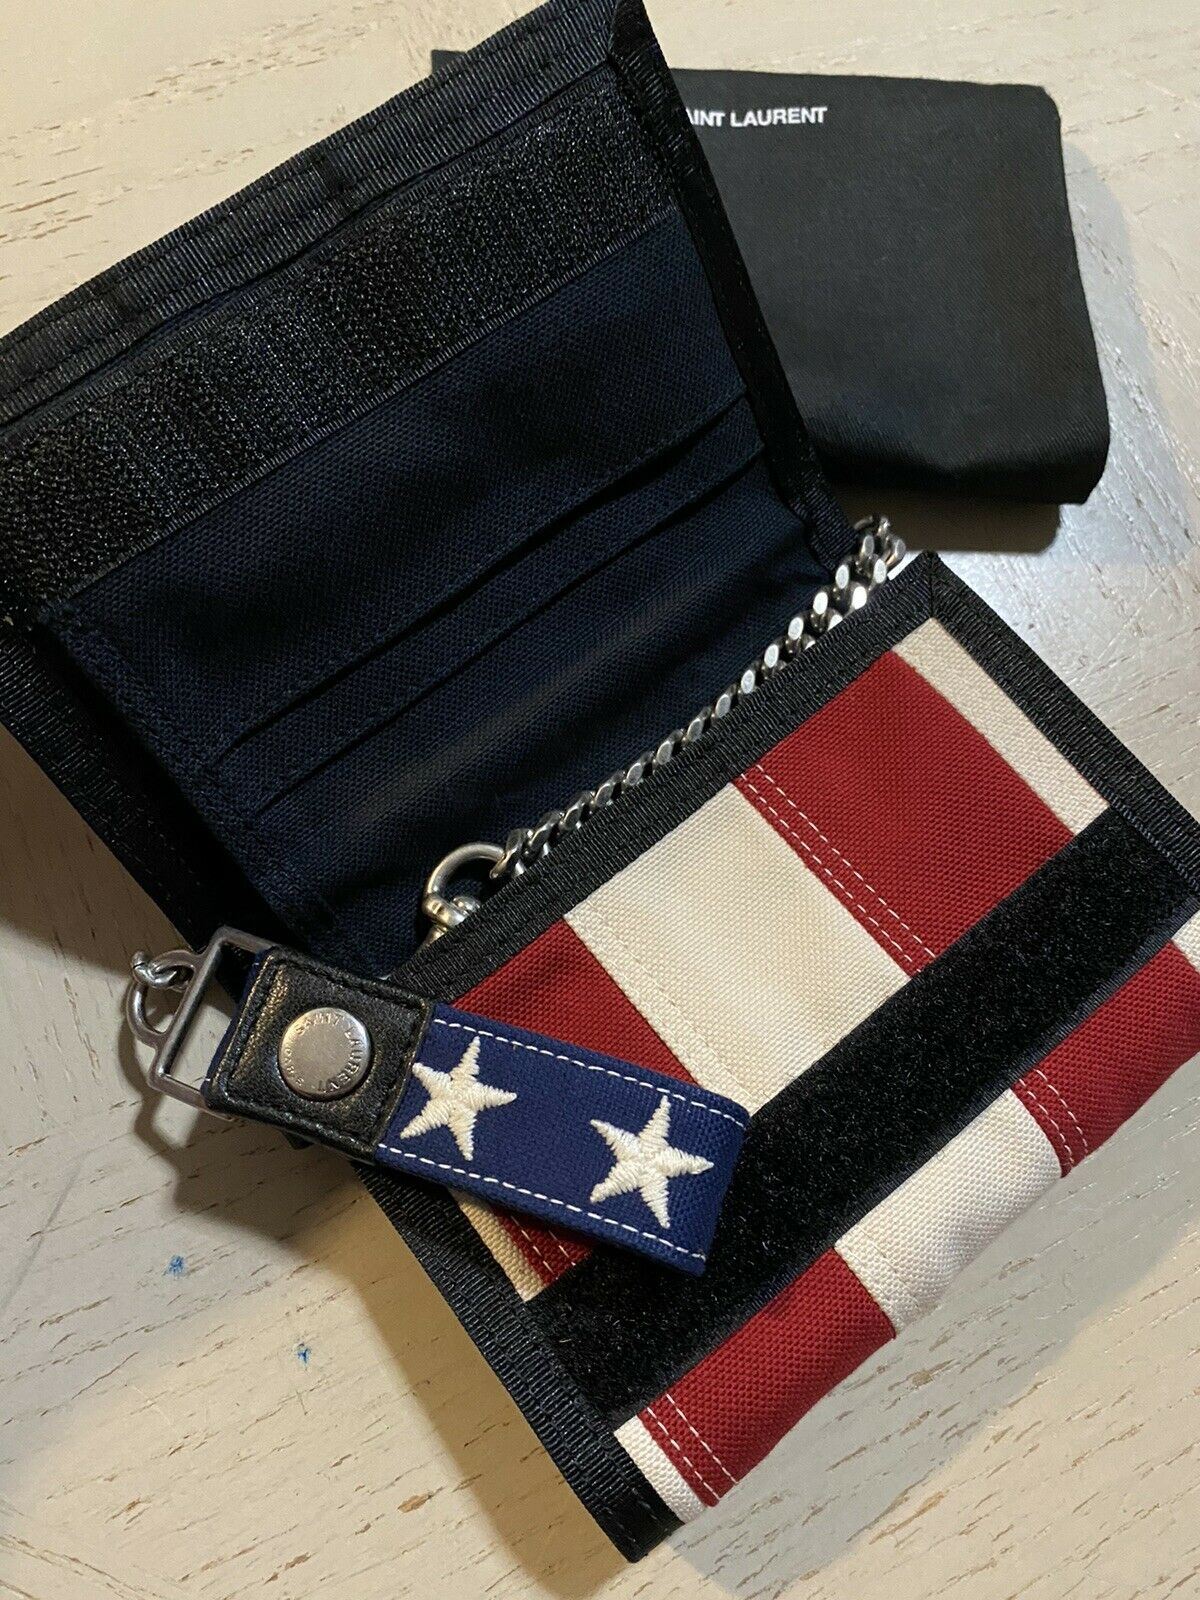 Новый кошелек Saint Laurent BUFFALO из парусины с американским флагом 556469